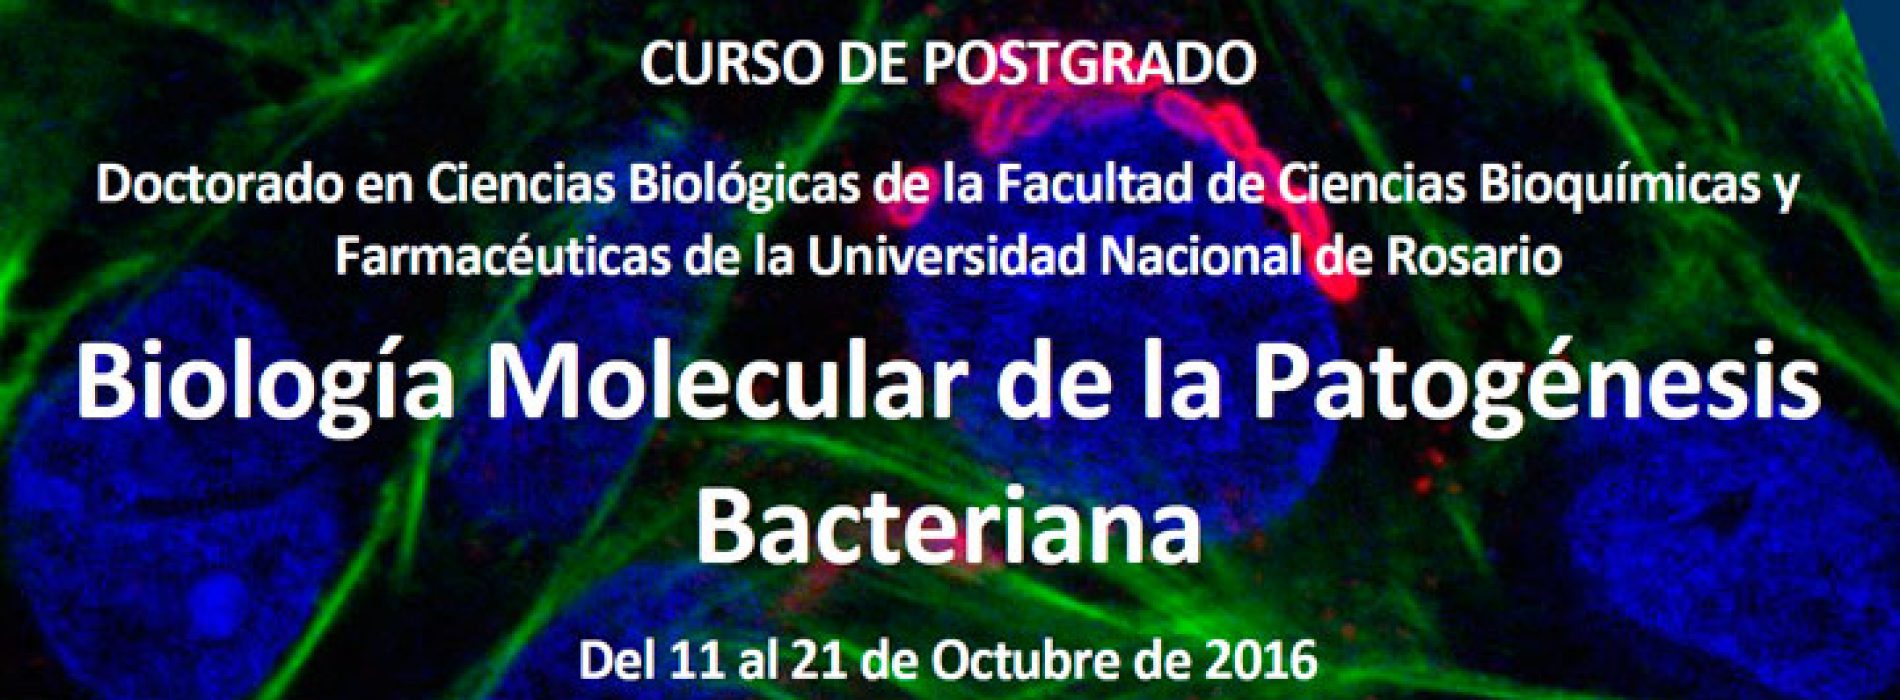 Curso de Postgrado: Biología Molecular de la Patogénesis Bacteriana